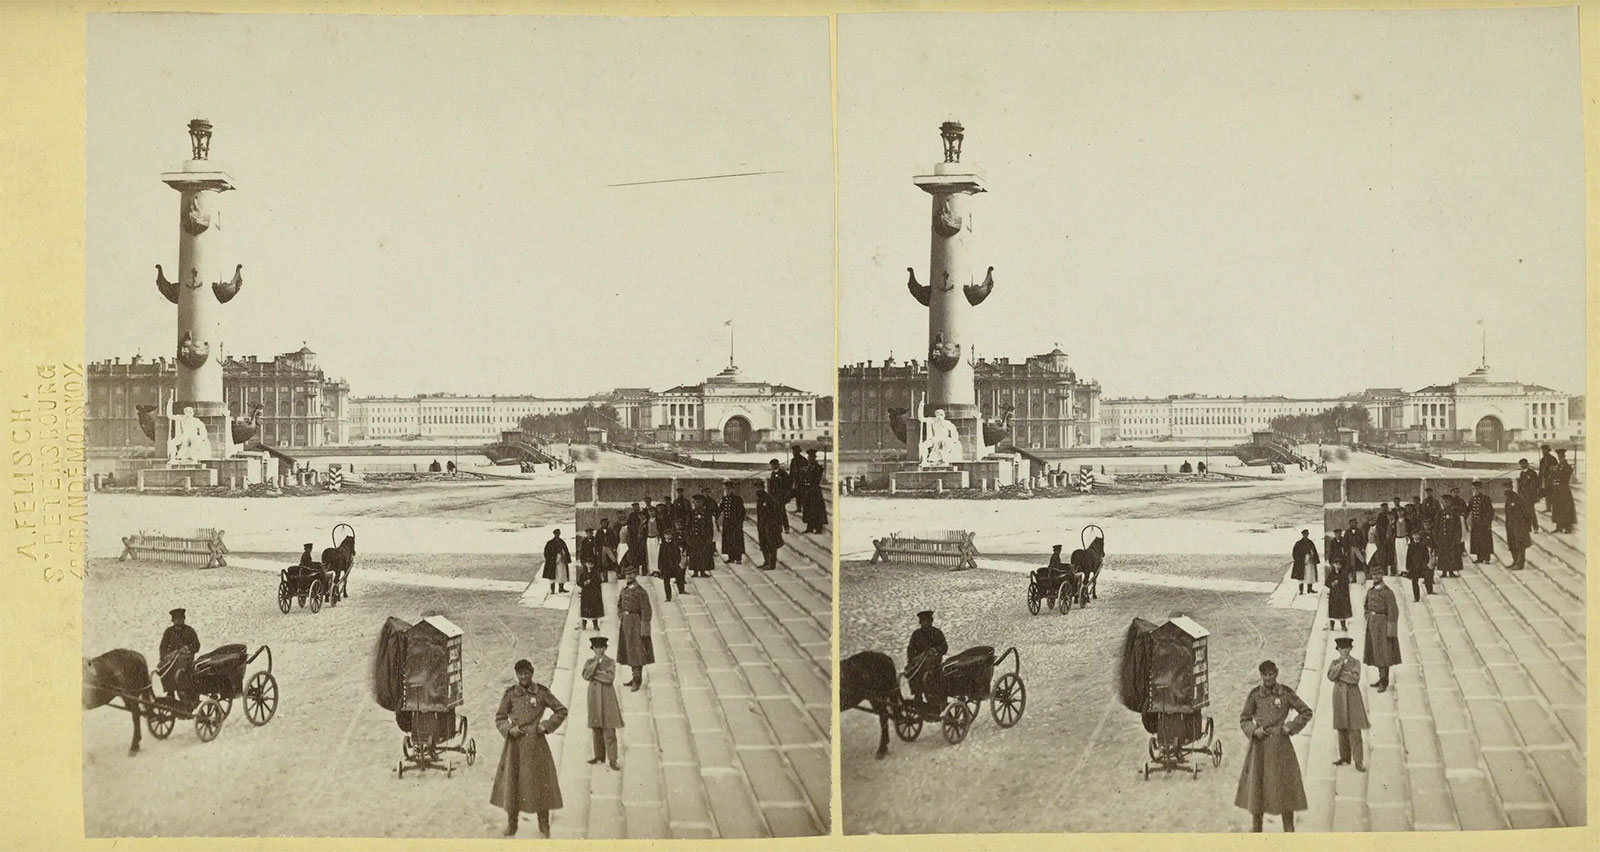 Биржевая площадь Стрелки Василькового острова в Санкт-Петербурге, 1868-1874 год, фото А. Э. Фелиша